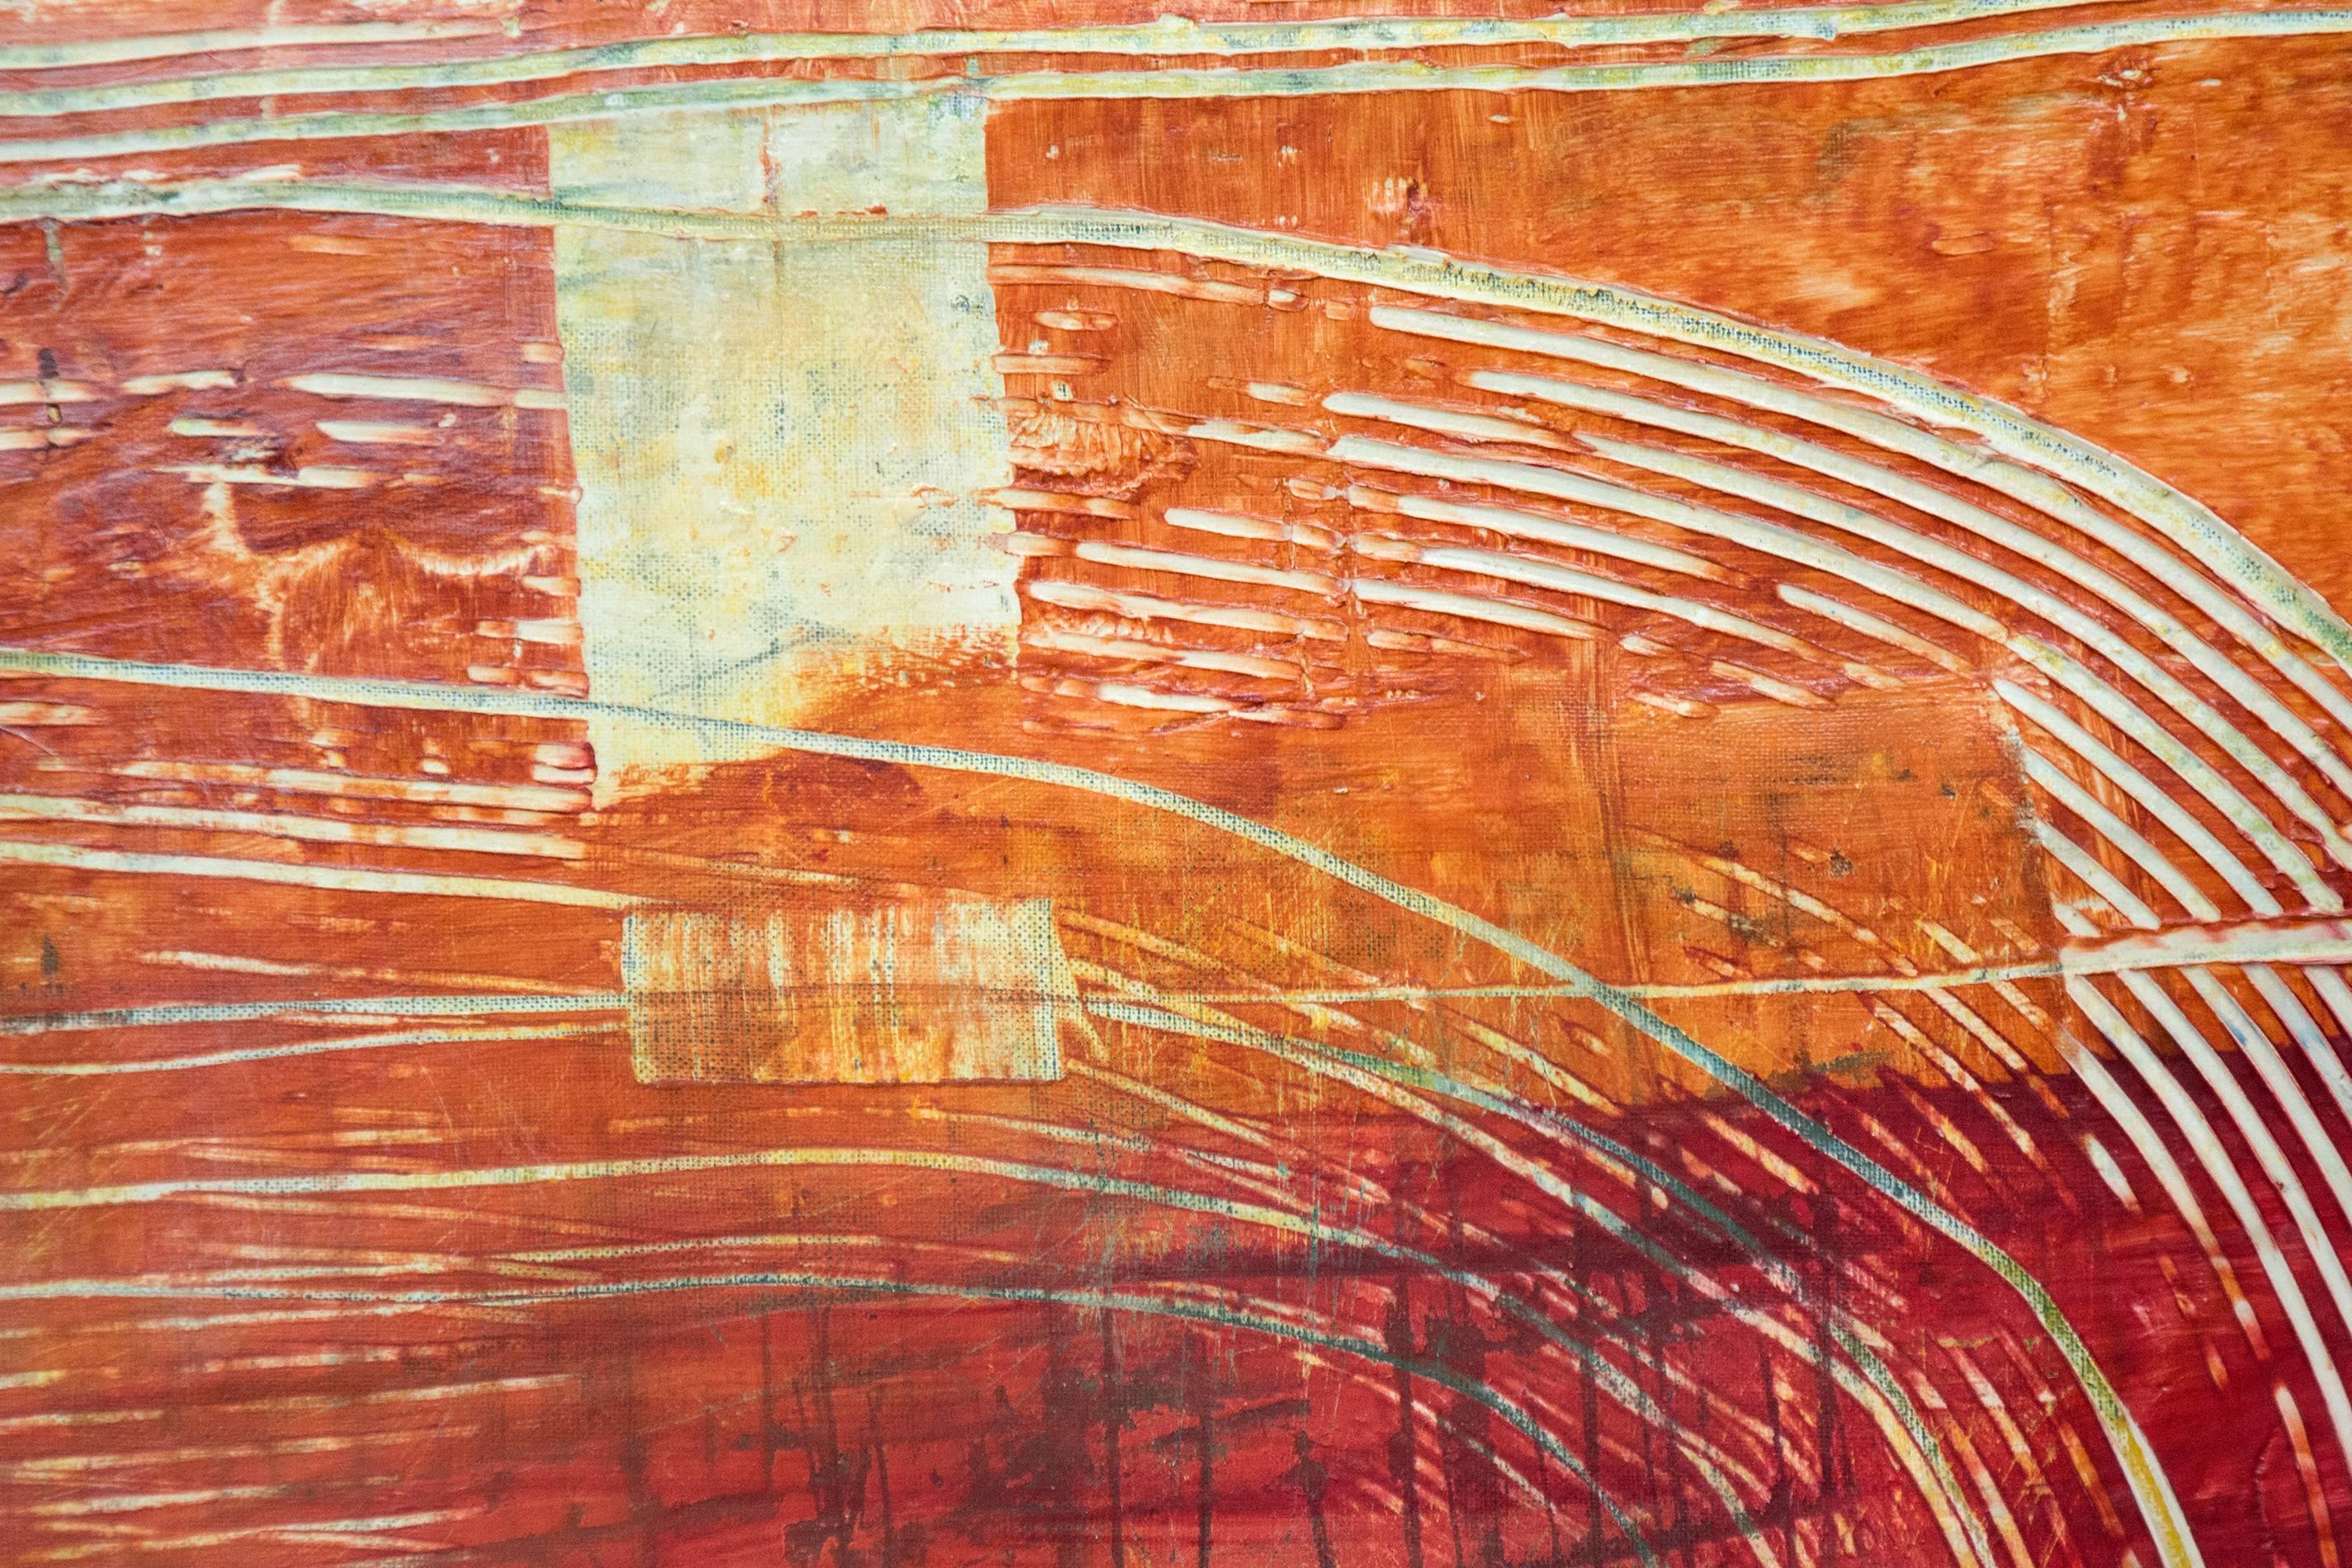 Kräftige Streifen, die durch karminroten und orangefarbenen, dicken und stellenweise leicht rissigen Putz gekämmt werden, bilden eine dynamische und ausgewogene Komposition in diesem Gemälde von Jutta Naim. Die geprägte und brünierte Oberfläche